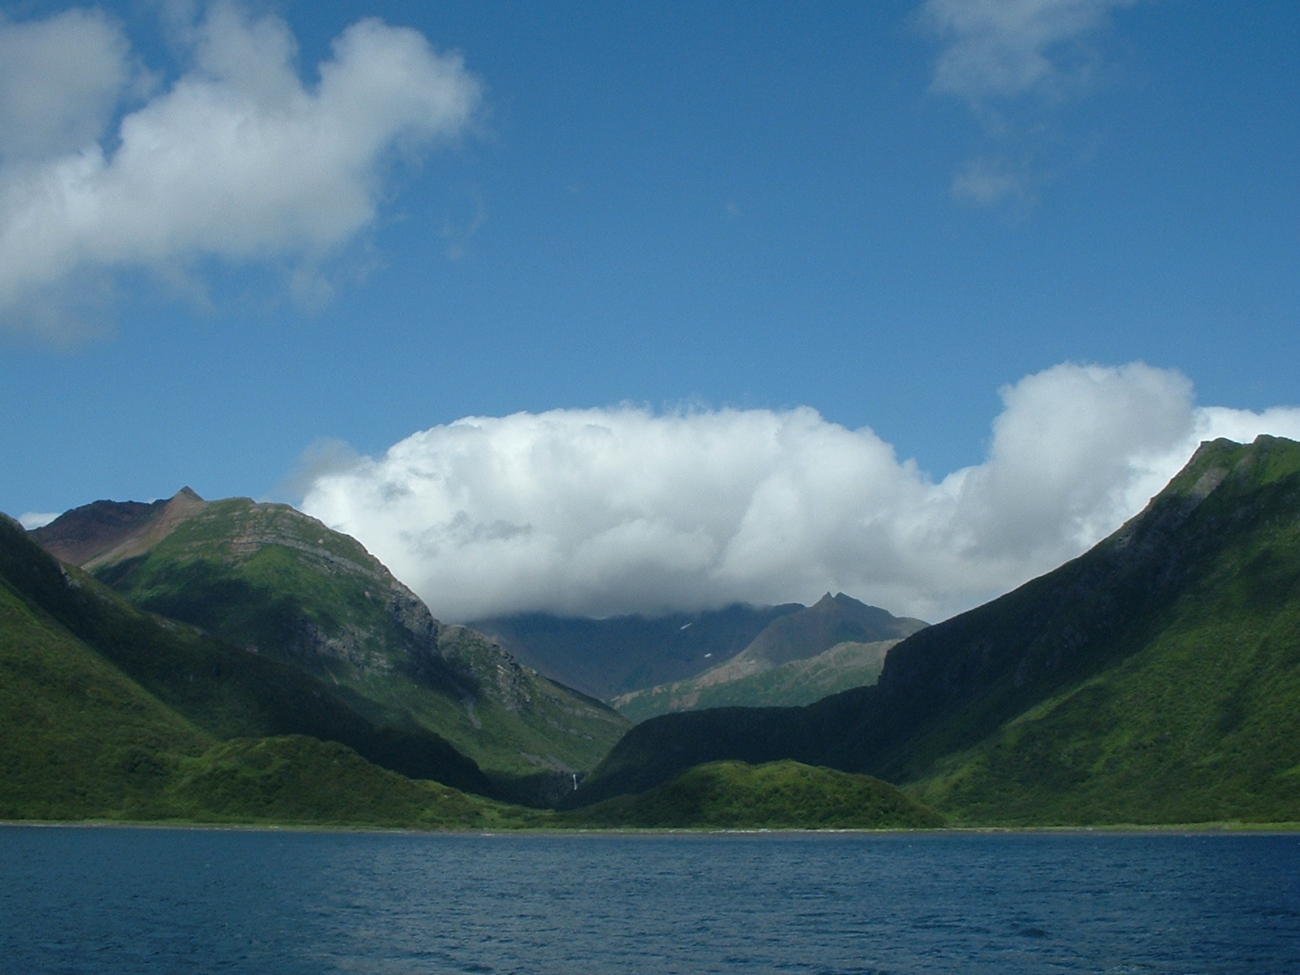 Coastal scene in southern Alaska